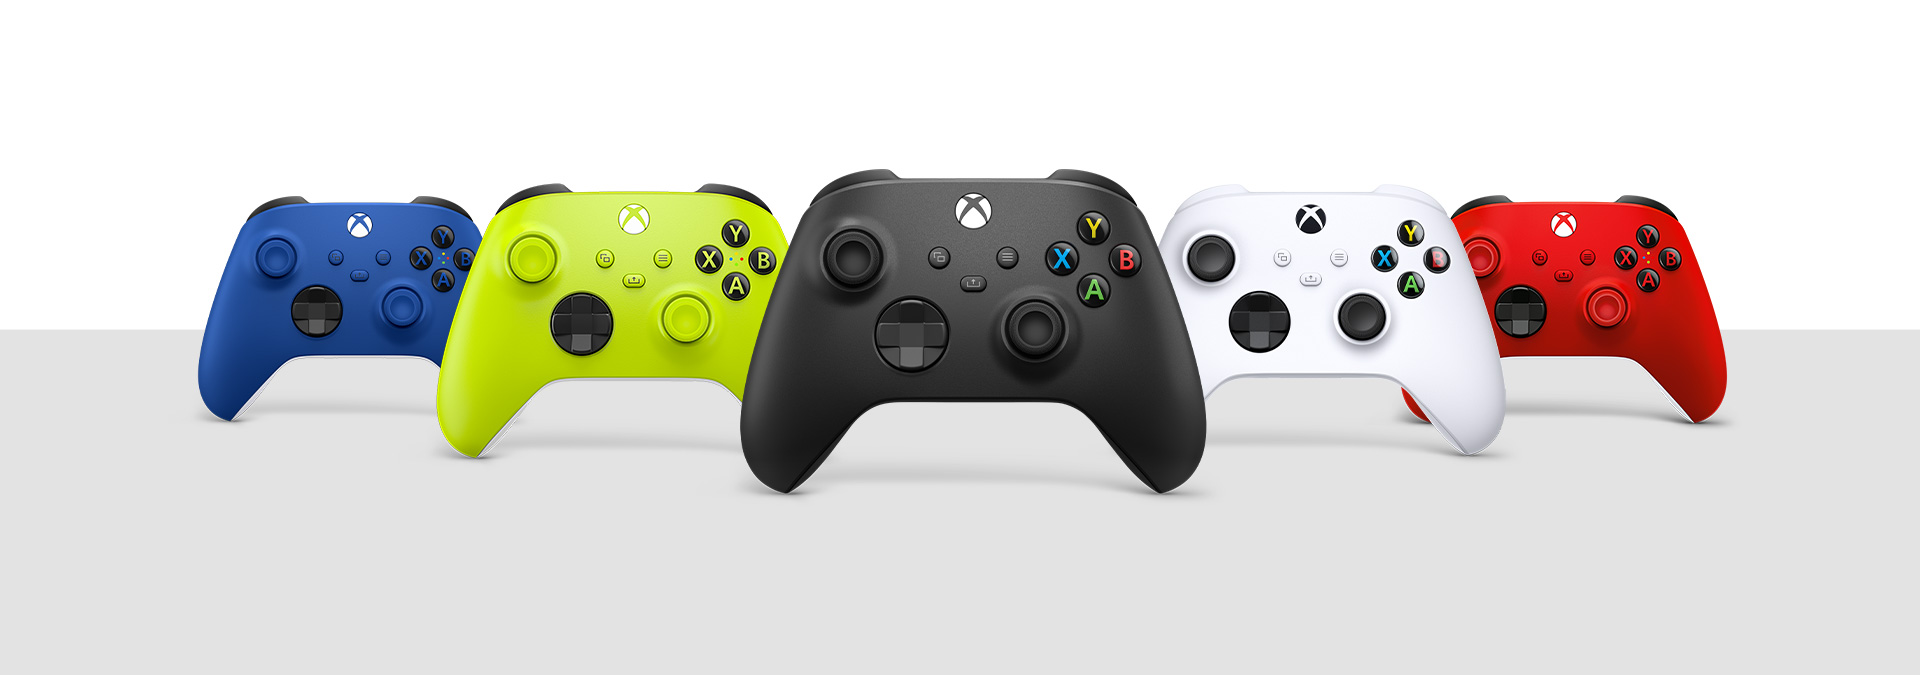 Геймпады Xbox в цветах Electric Volt, Shock Blue, Carbon Black, зеленый, темно-розовый, Robot White и Pulse Red